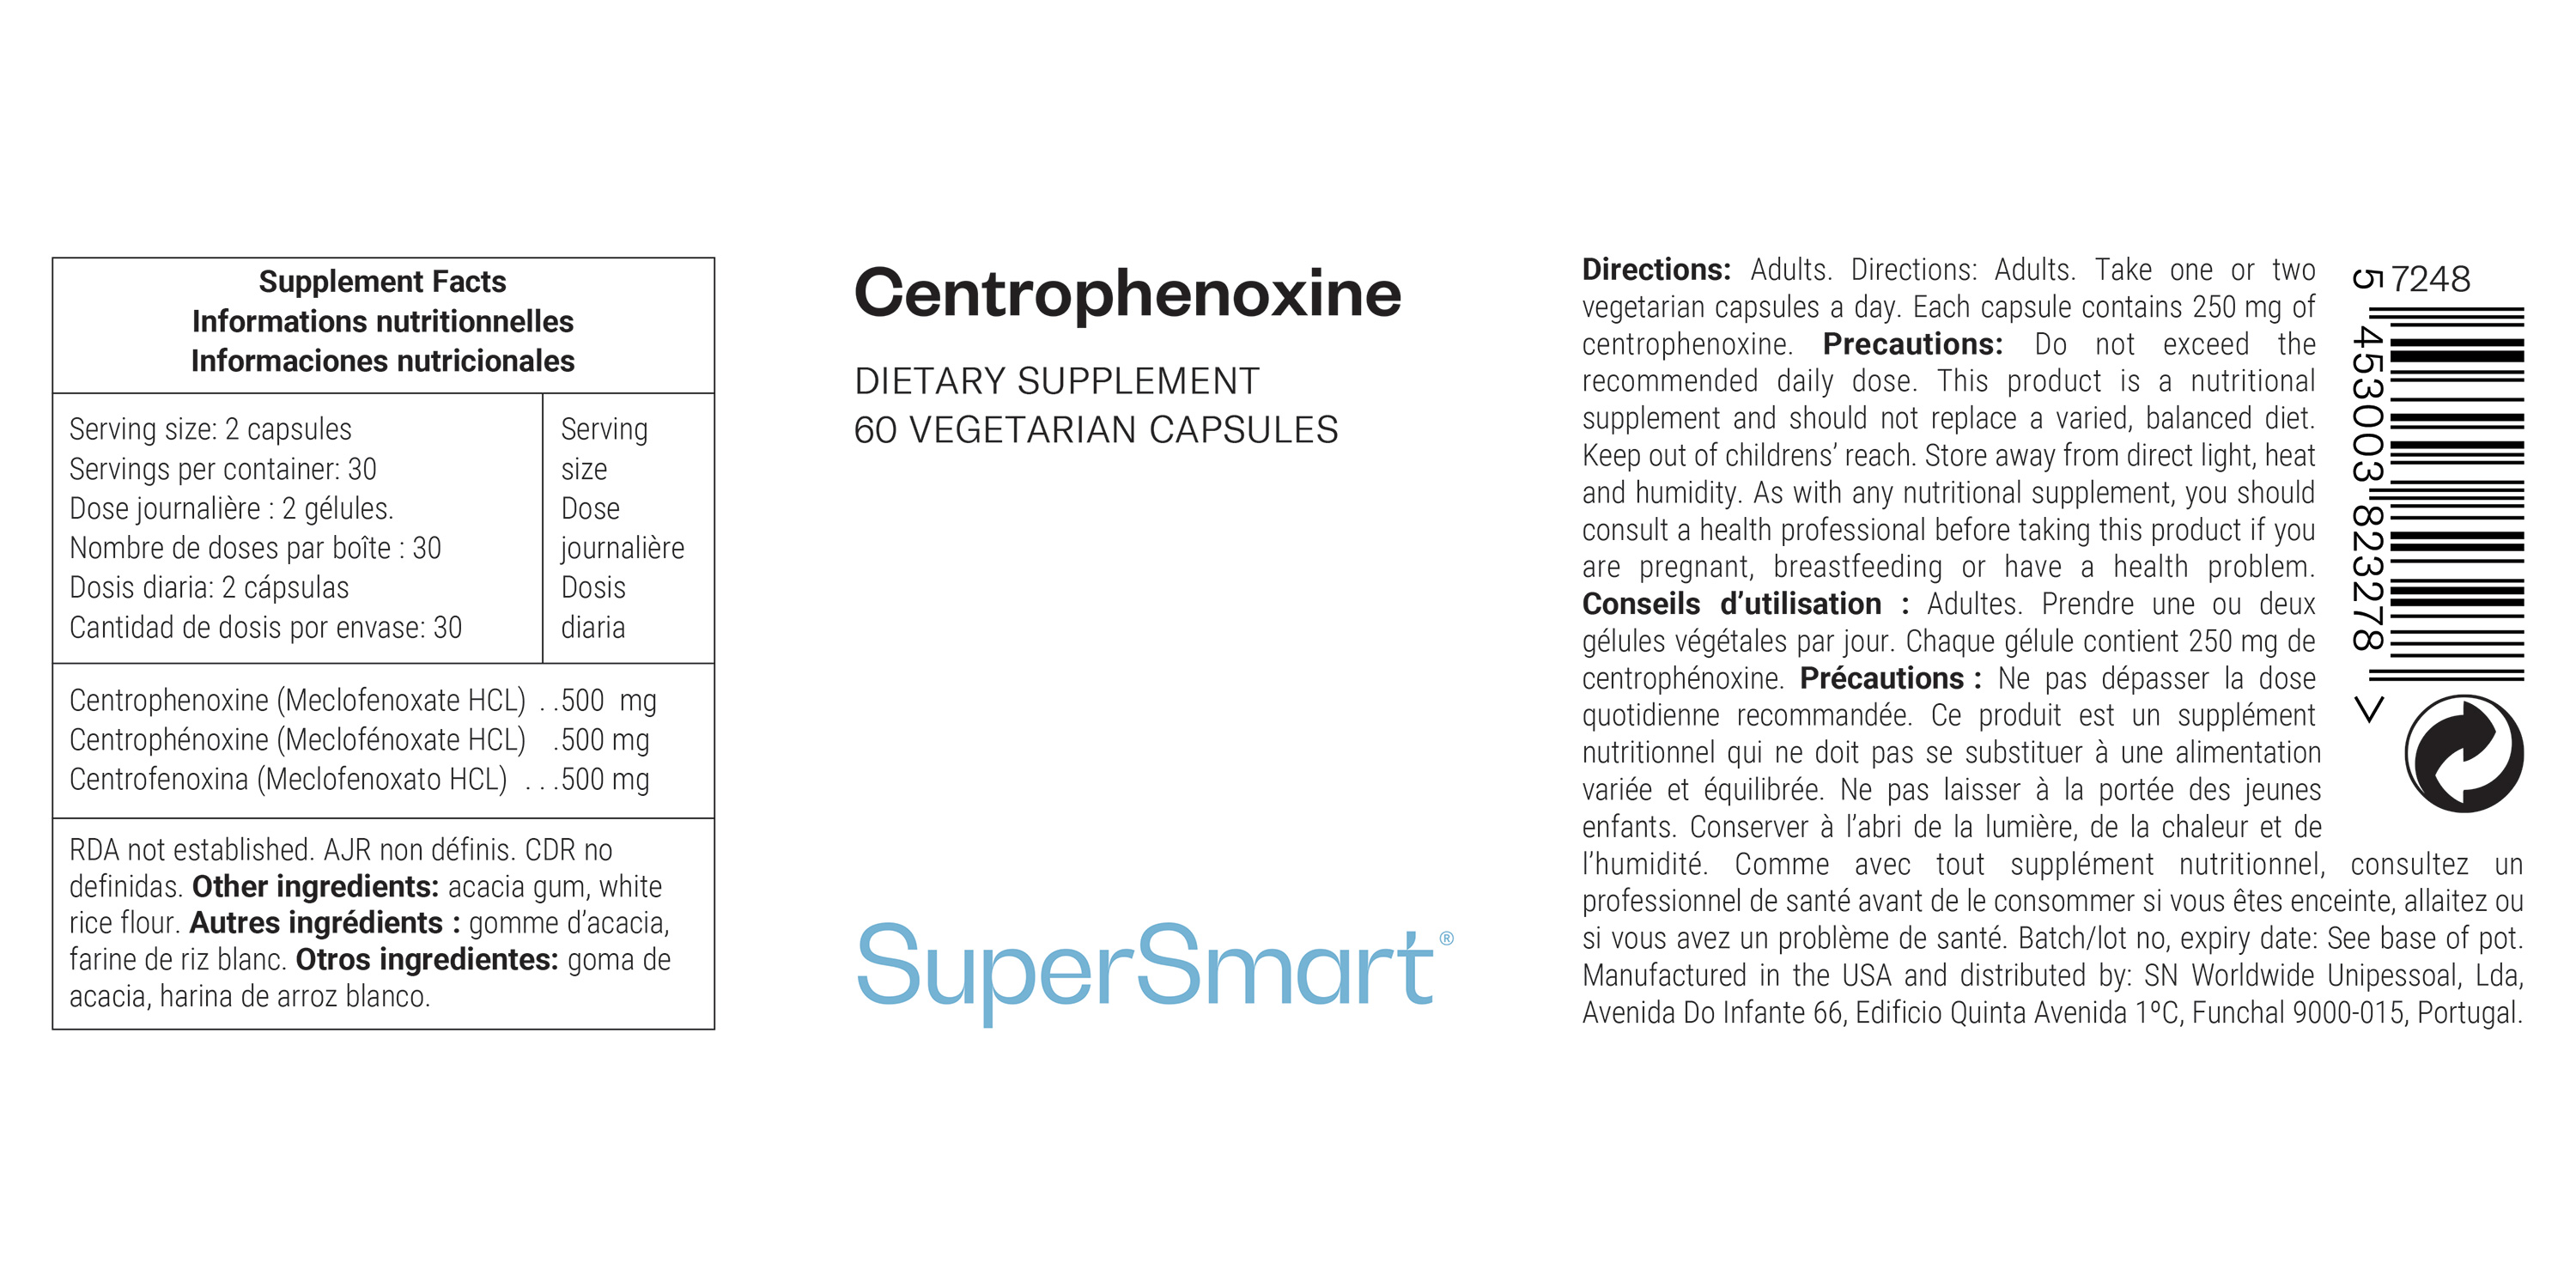 Centrofenoxina suplemento alimentar antioxidante, contribui para a função cerebral